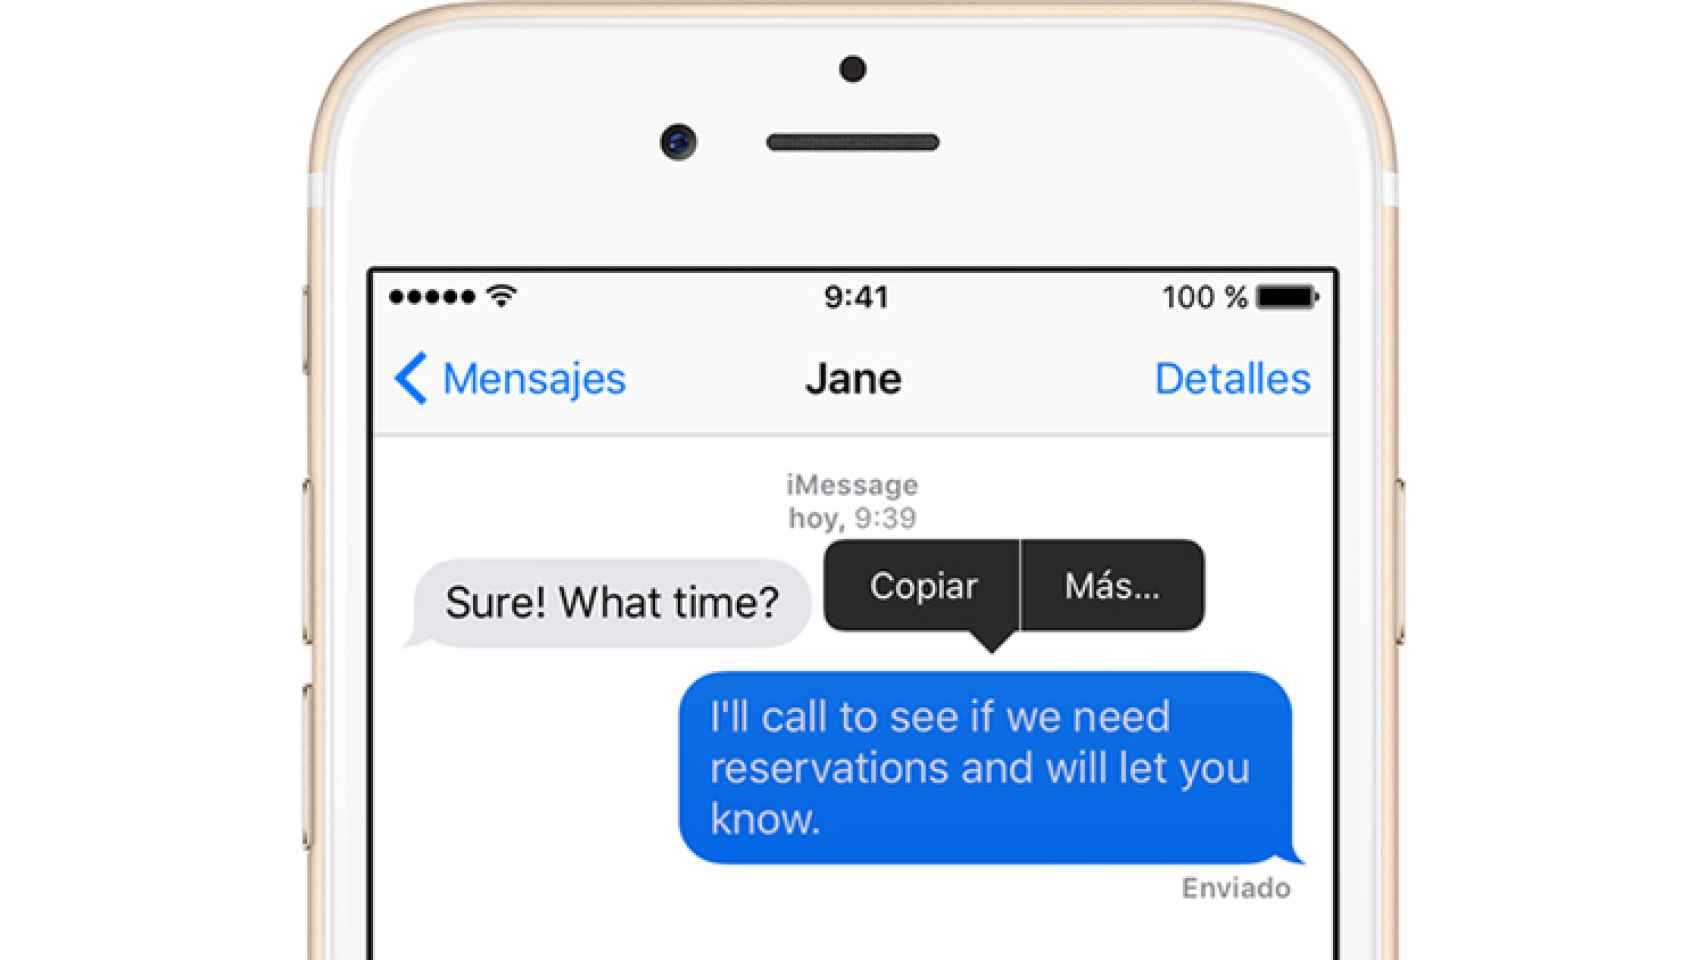 La aplicación de iMessage (Mensajes) en un iPhone